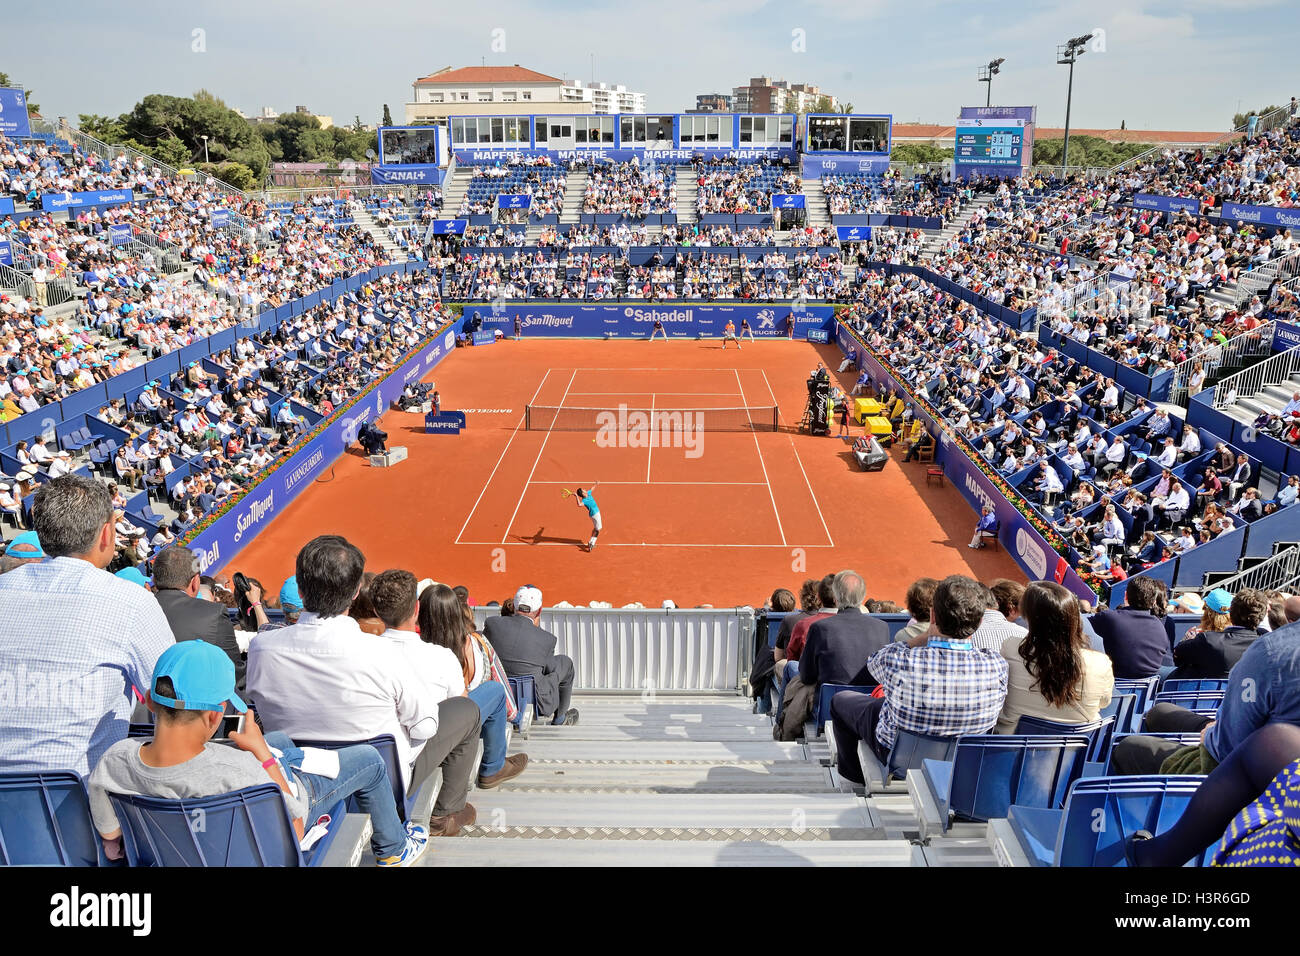 Barcelone - APR 26 : les spectateurs à l'ATP Open de Barcelone Banc Sabadell Conde de Godo tournoi. Banque D'Images